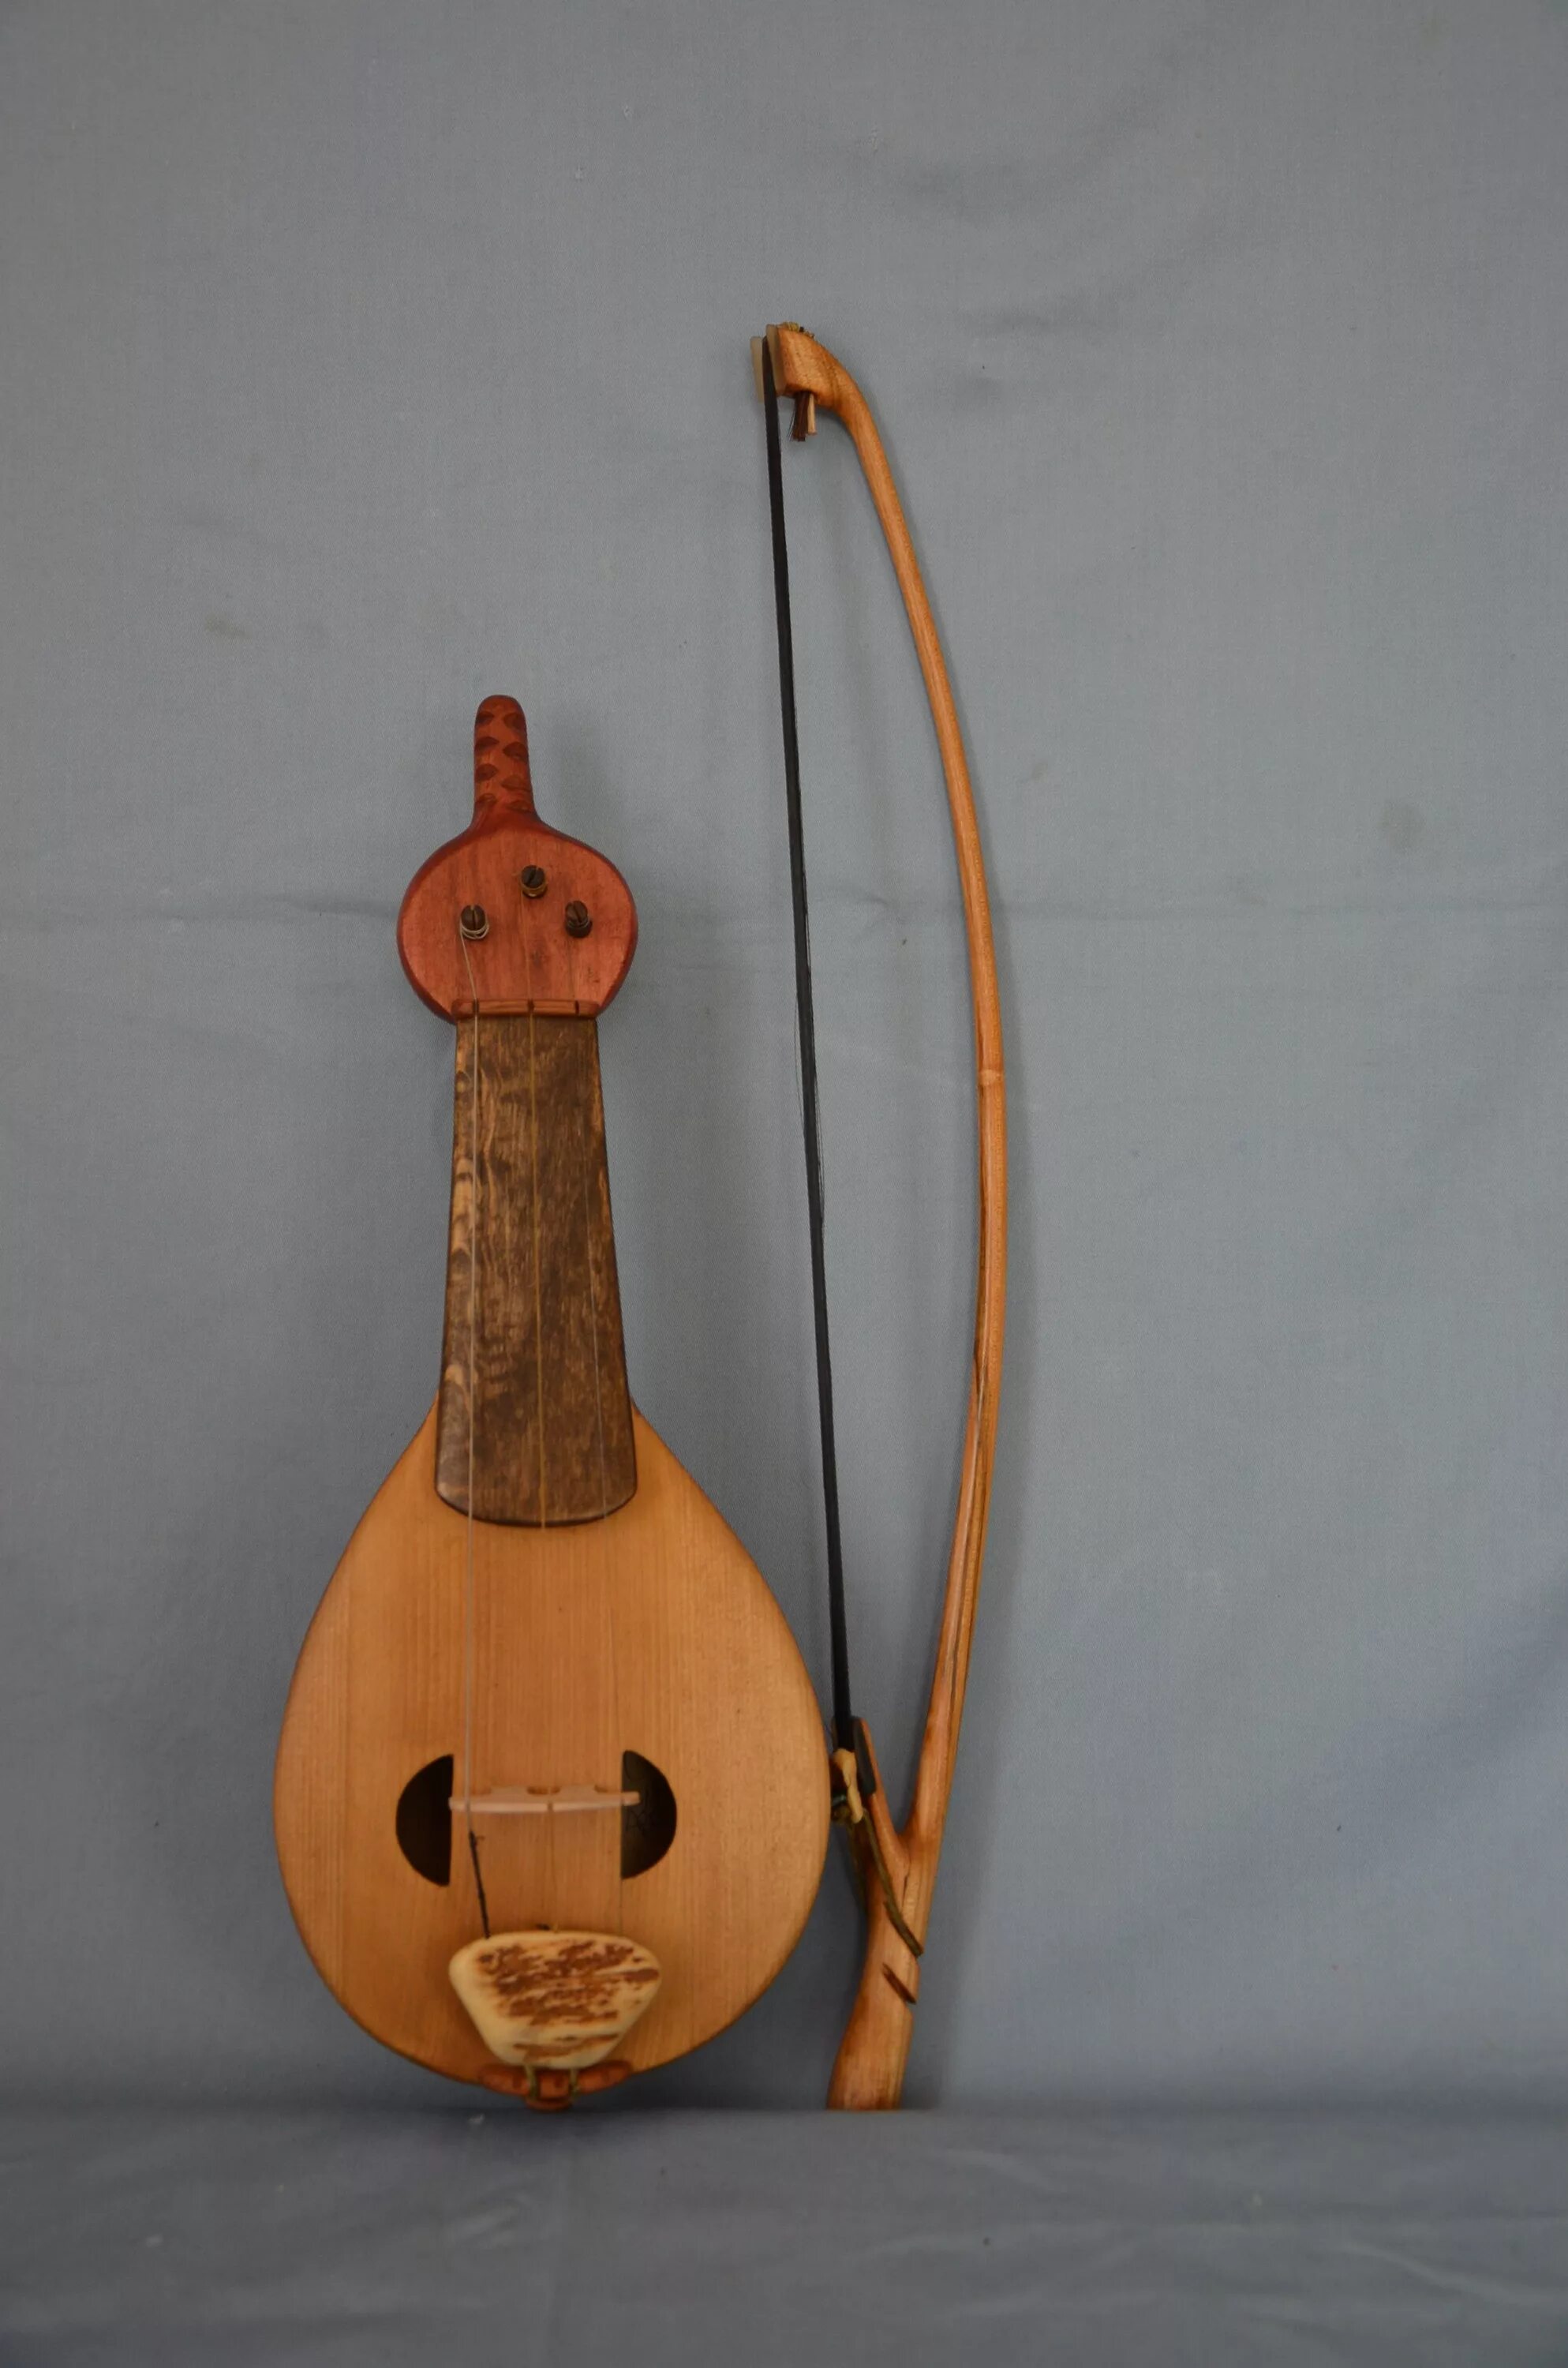 Гудок музыкальный инструмент народные музыкальные инструменты. Скрипель музыкальный инструмент. Сигудок музыкальный инструмент. Древнерусский инструмент гудок. Струнные инструменты средневековья.